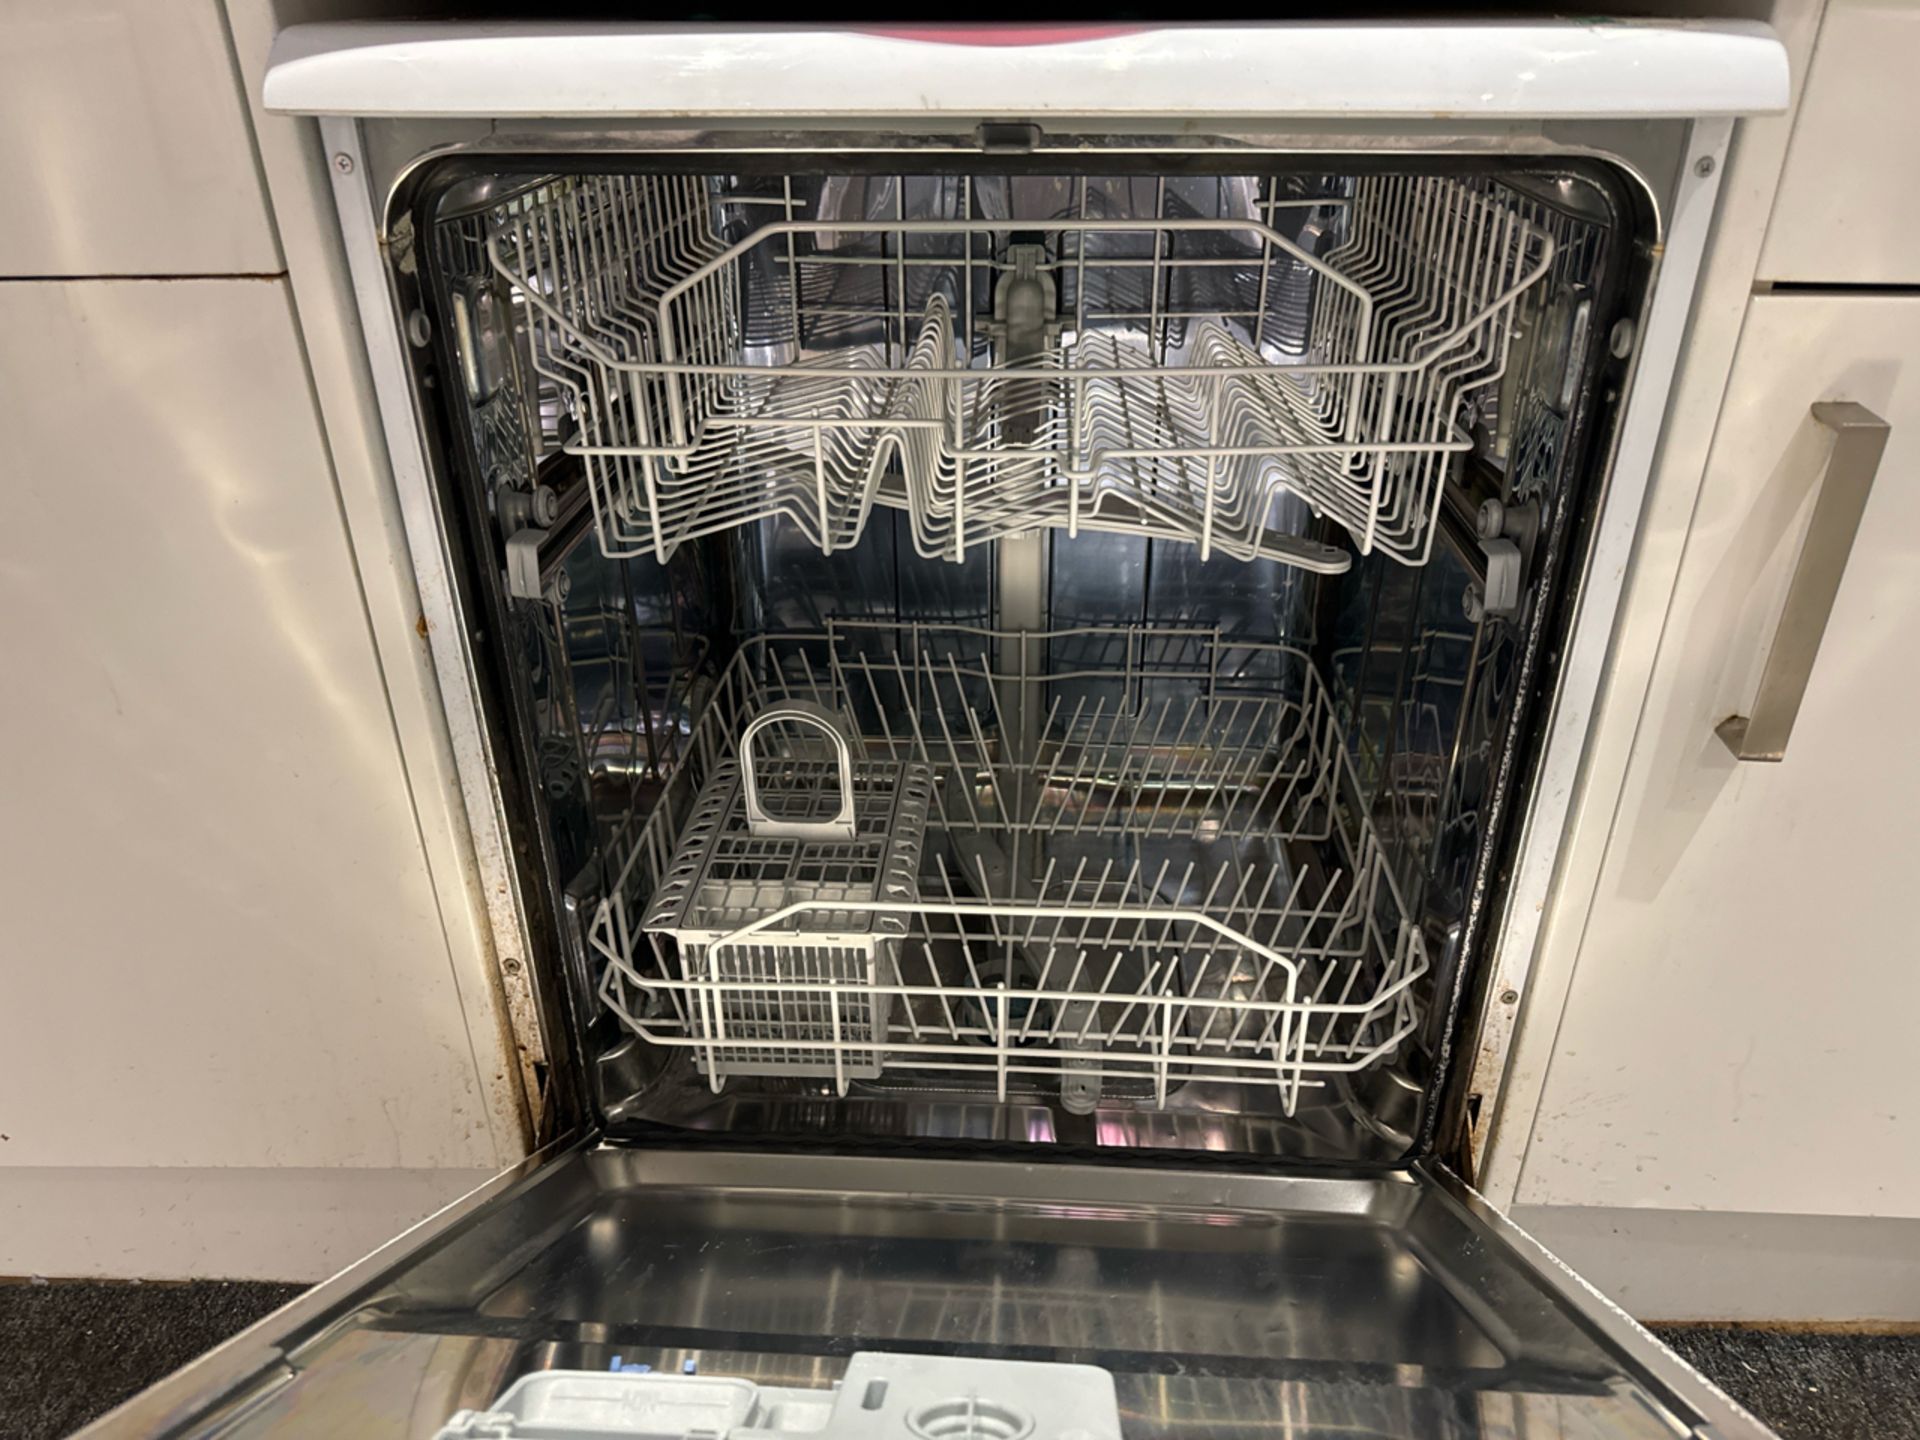 Hotpoint Dishwasher - Image 3 of 3